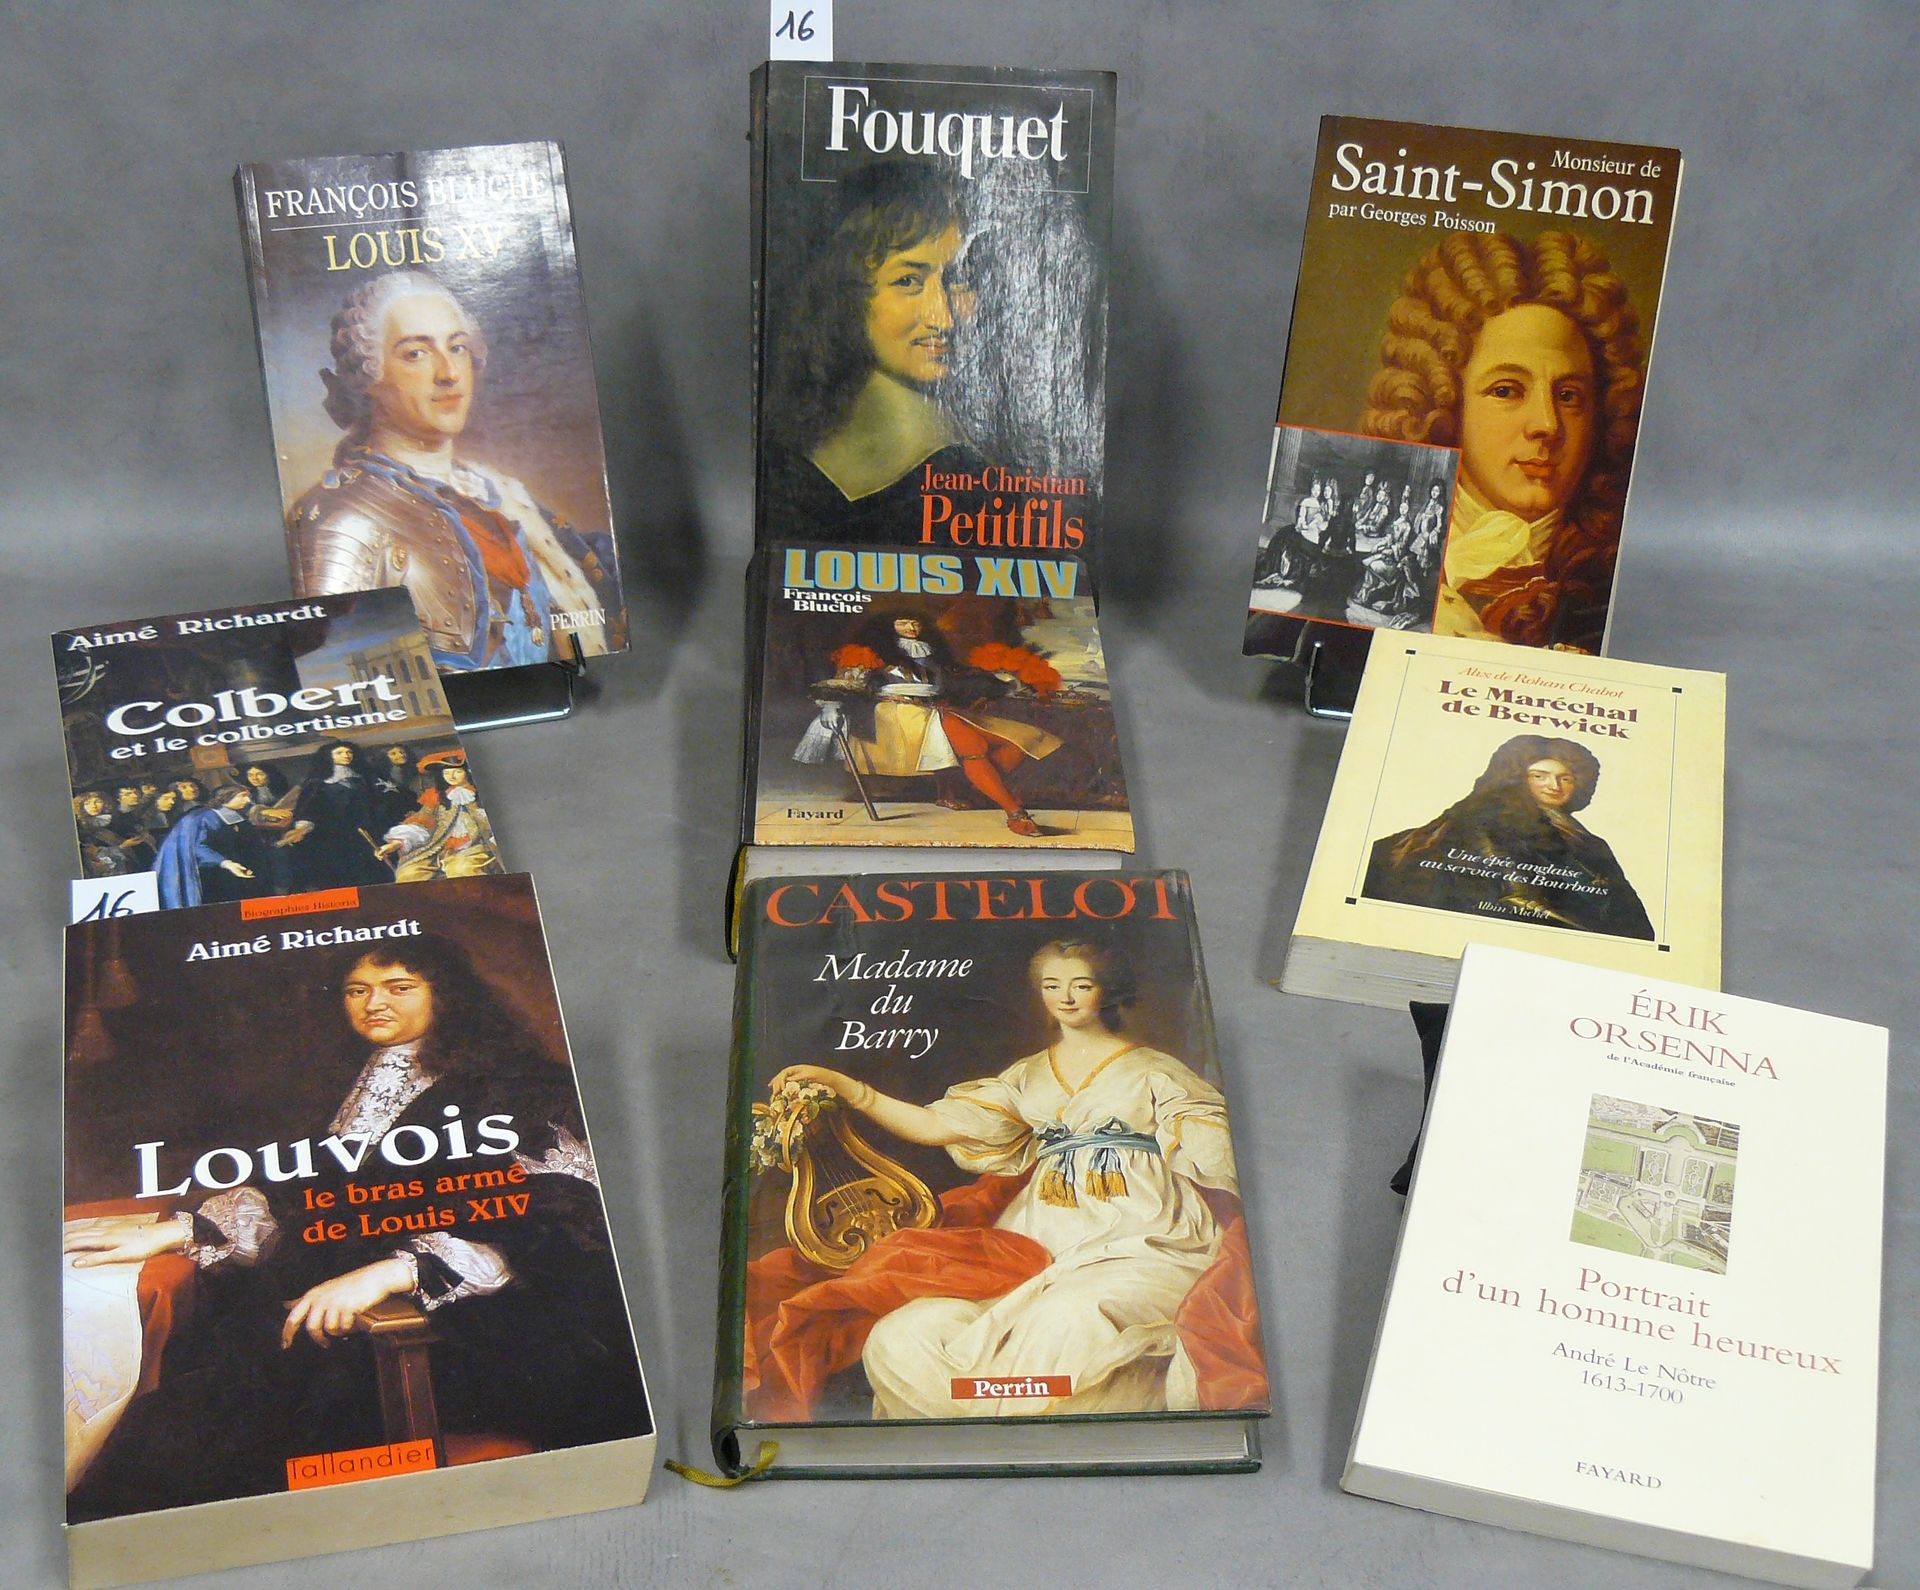 ANCIEN RÉGIME lot of 9 works on the Ancien Régime including : Fouquet